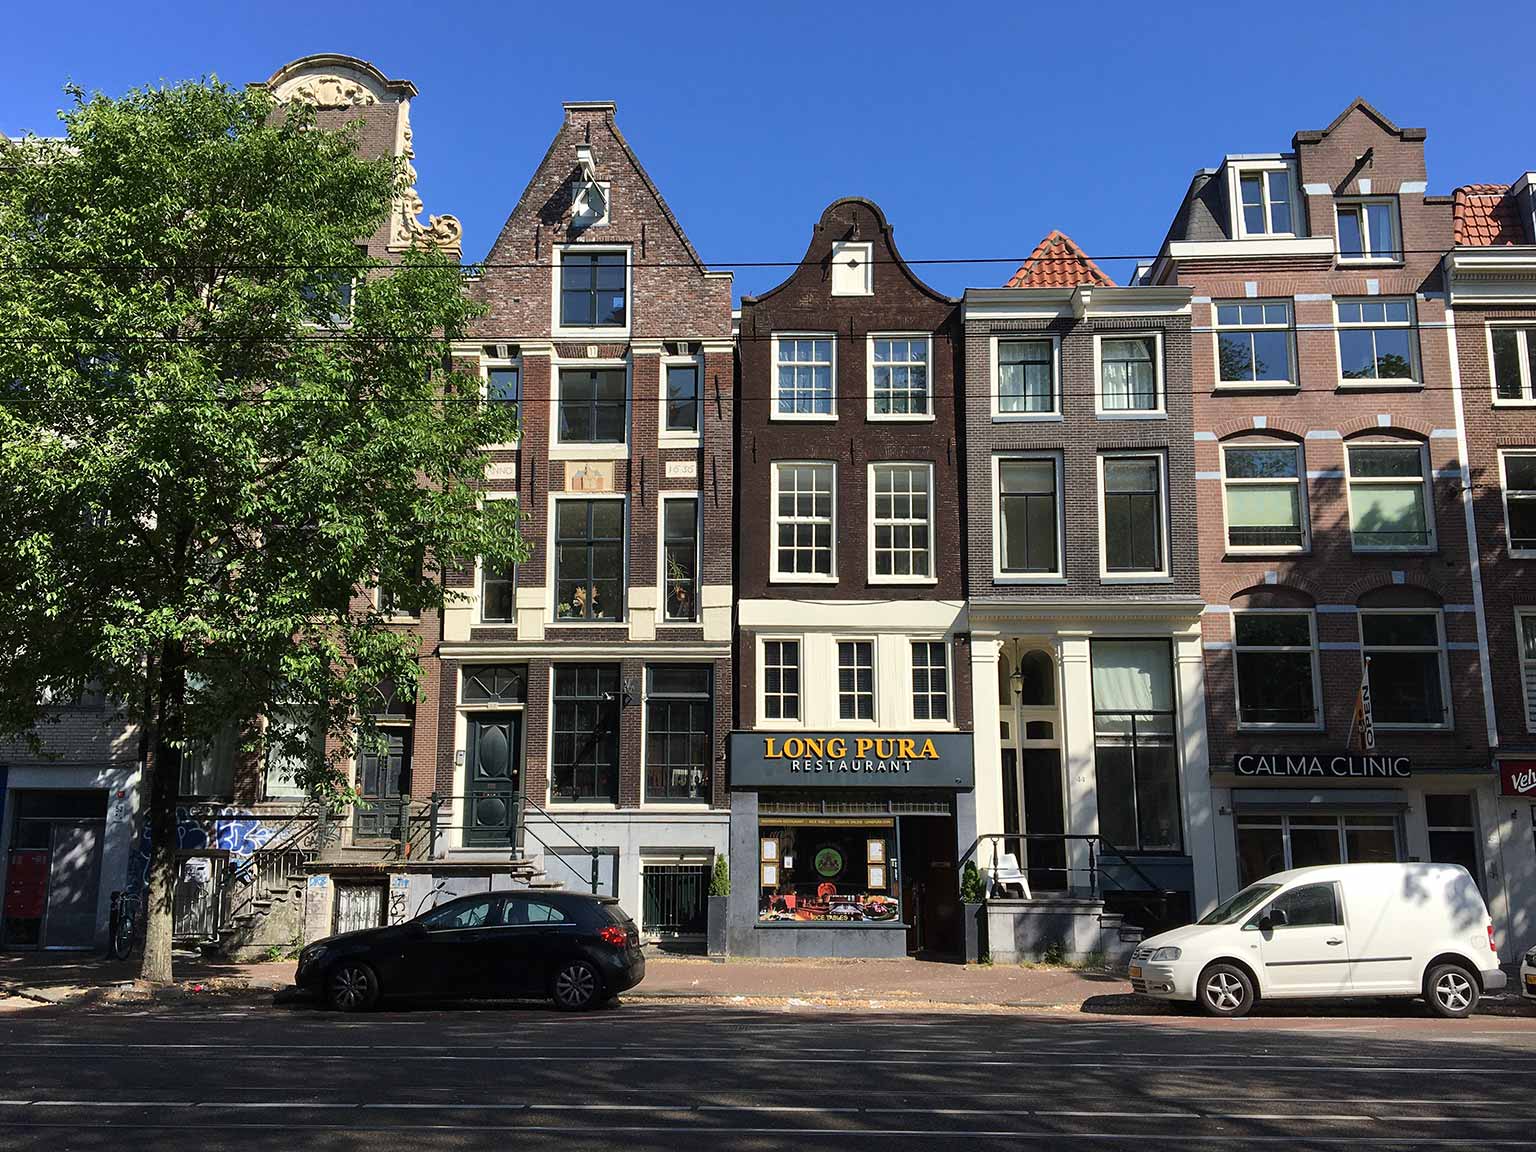 Rozengracht 48, Amsterdam, huis met de Noorderkerk op een gevelsteen